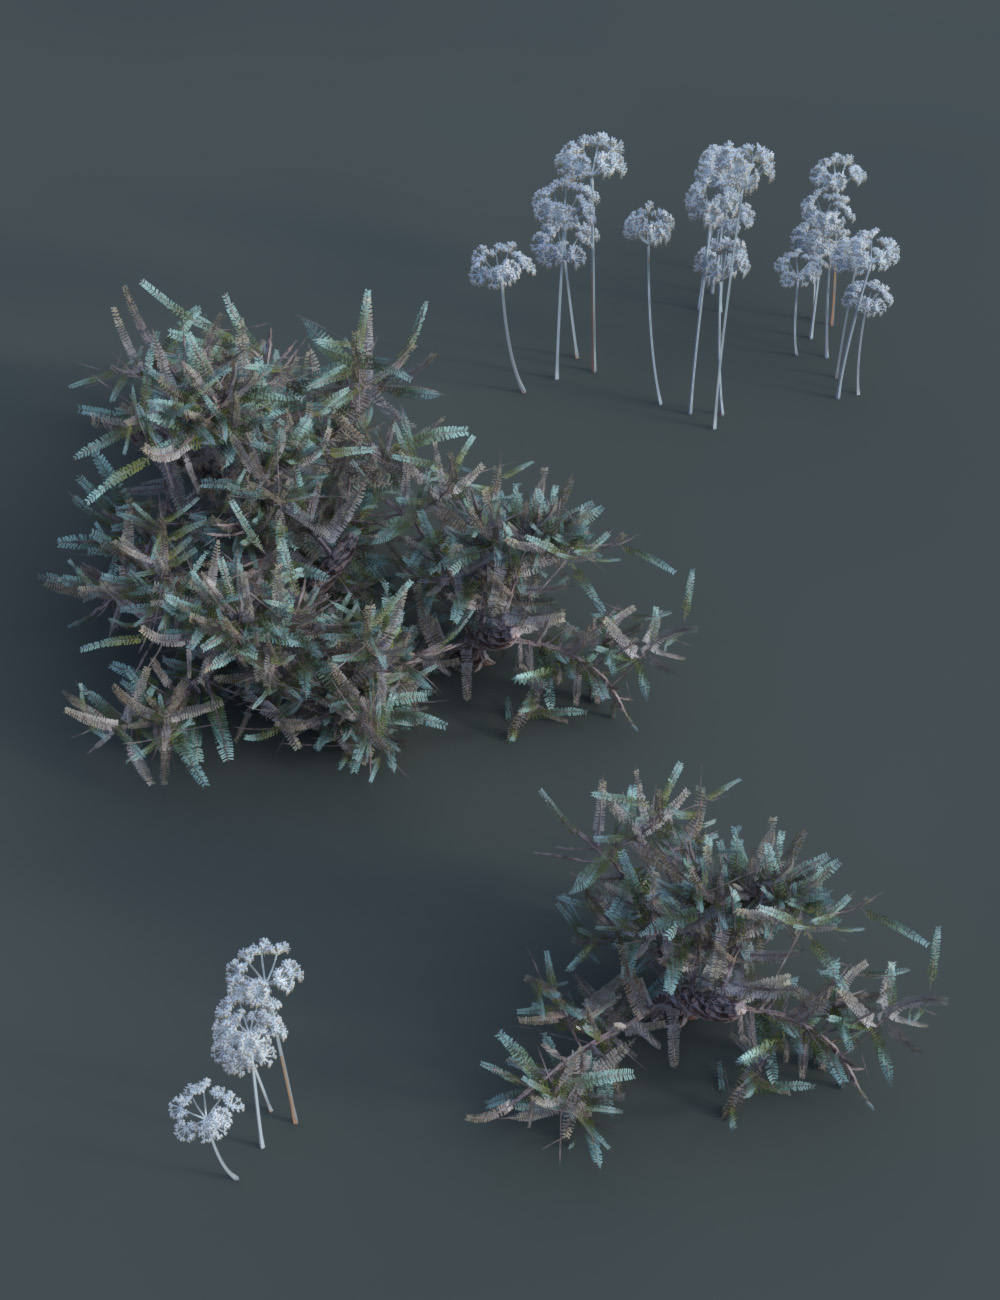 Frosty Plants - Low Res Winter Plants by: MartinJFrost, 3D Models by Daz 3D